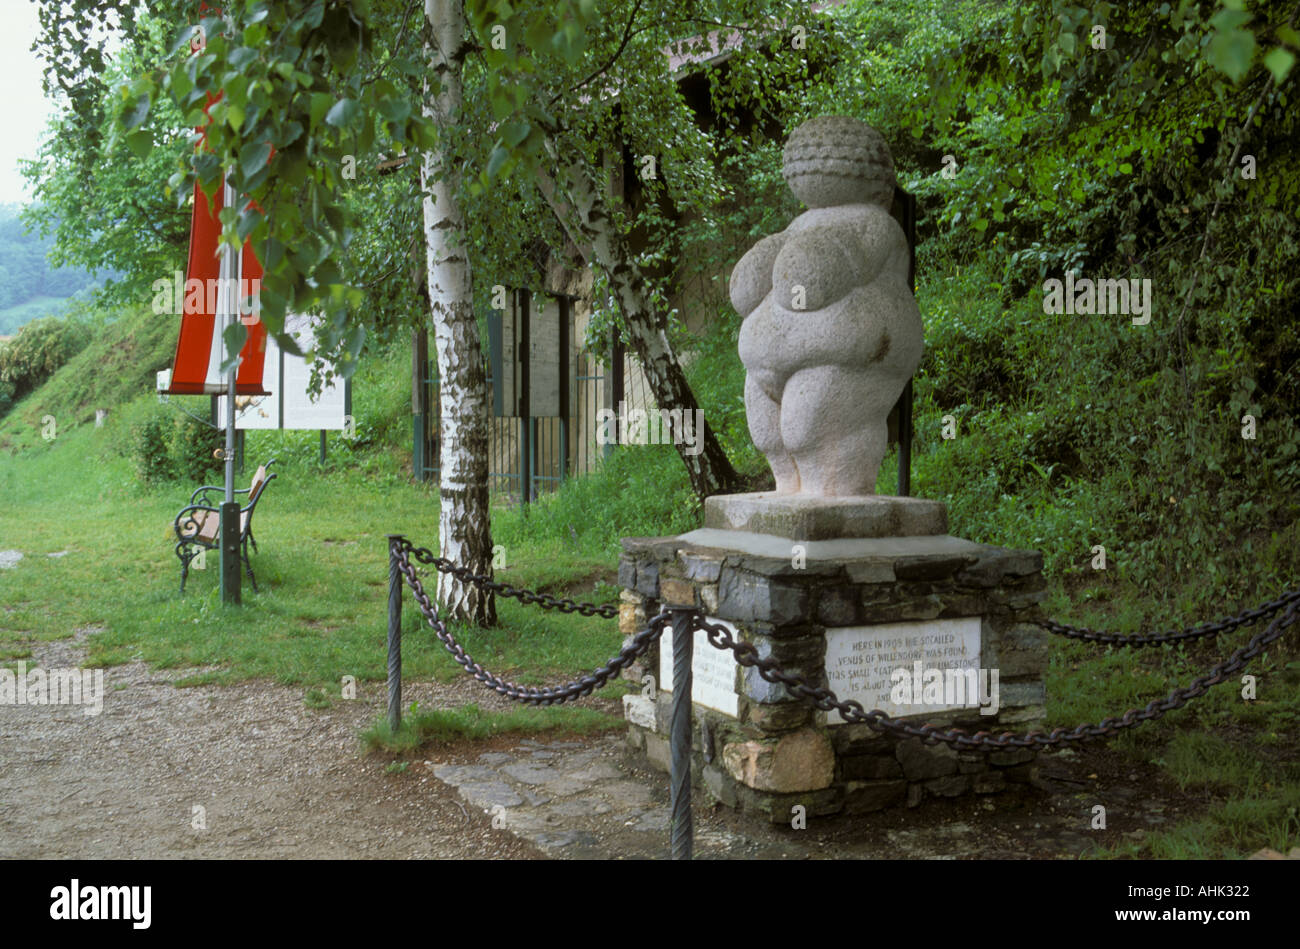 Venus of Willendorf archaeological site Austria Stock Photo